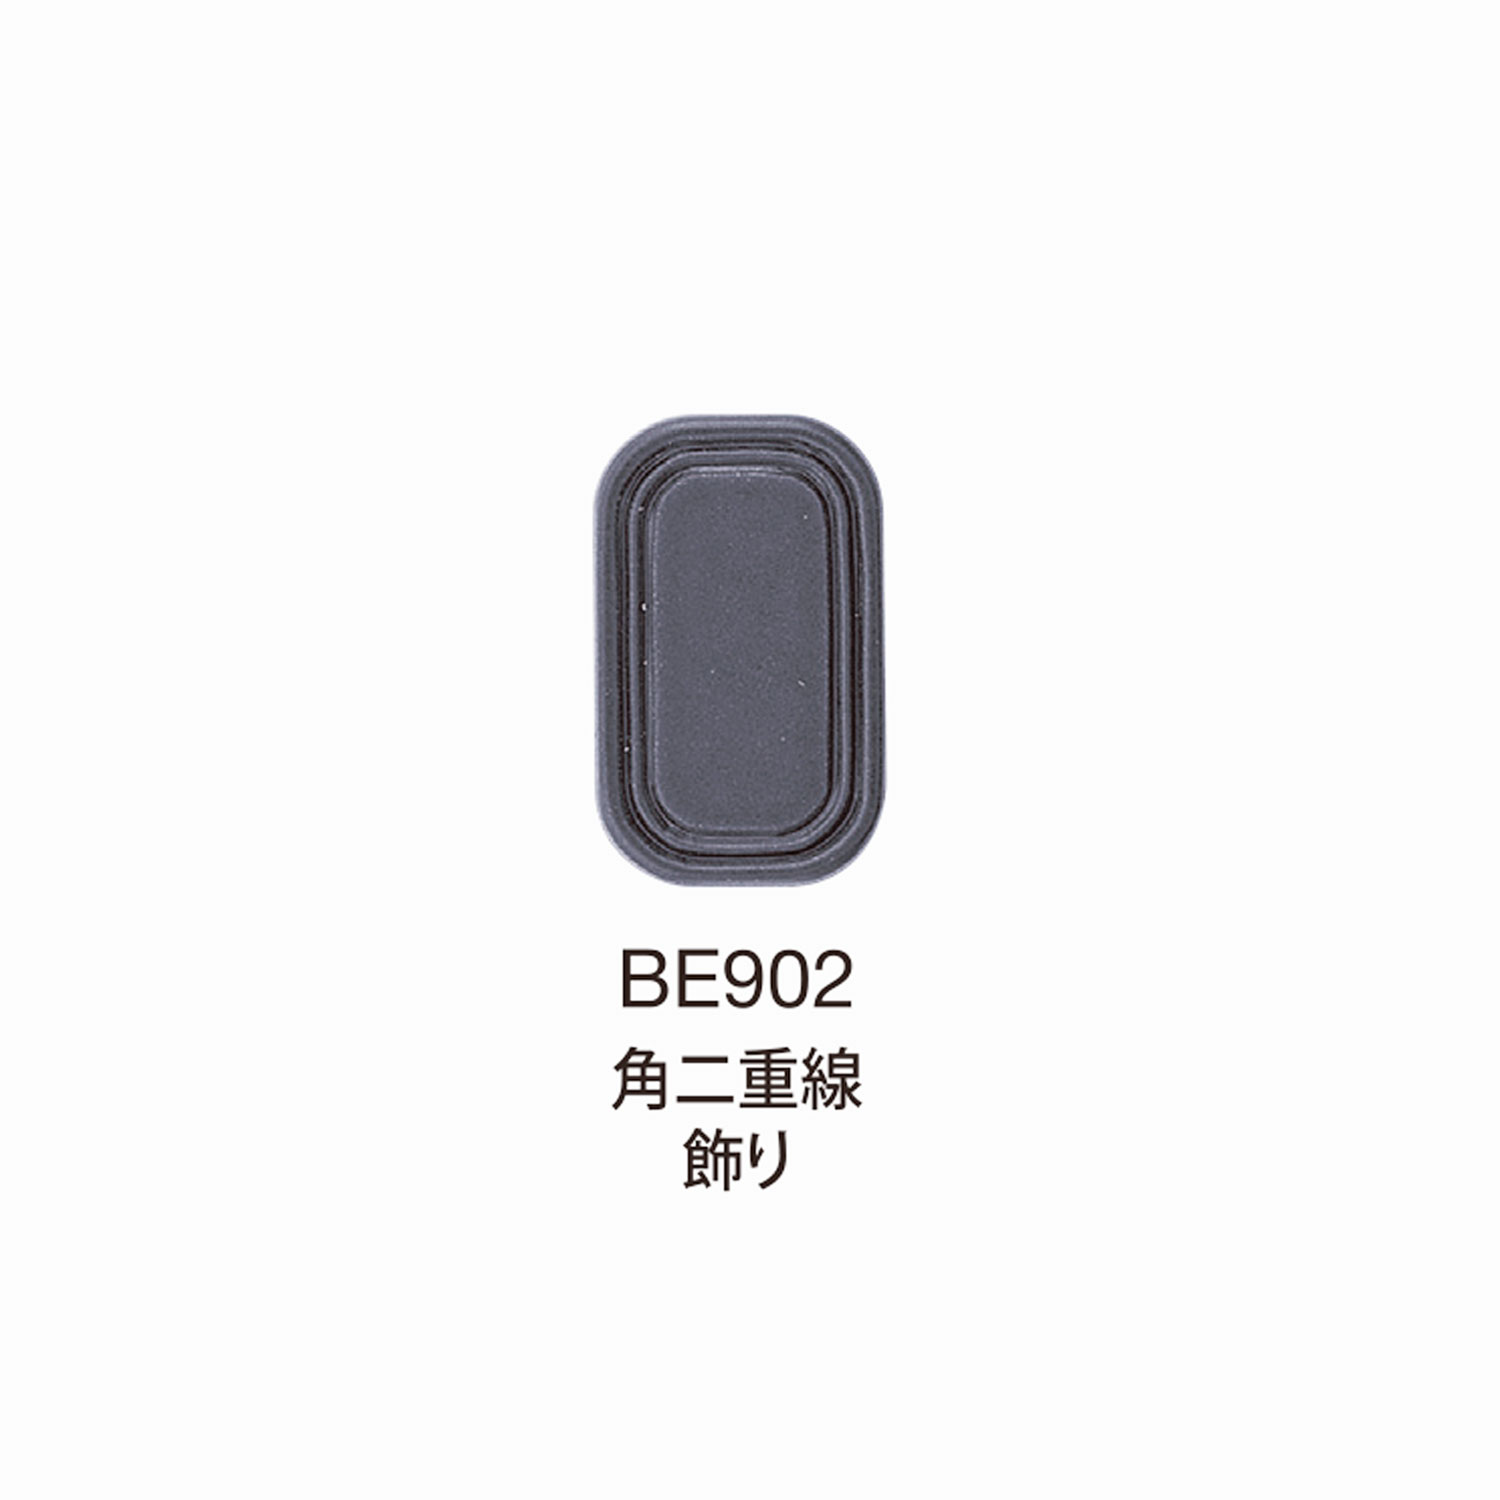 BE902 Trang Trí đường đôi Góc Phần Cứng Trên Cùng BEREX α[Mặt Thắt Lưng Và Khoen] Morito(MORITO)